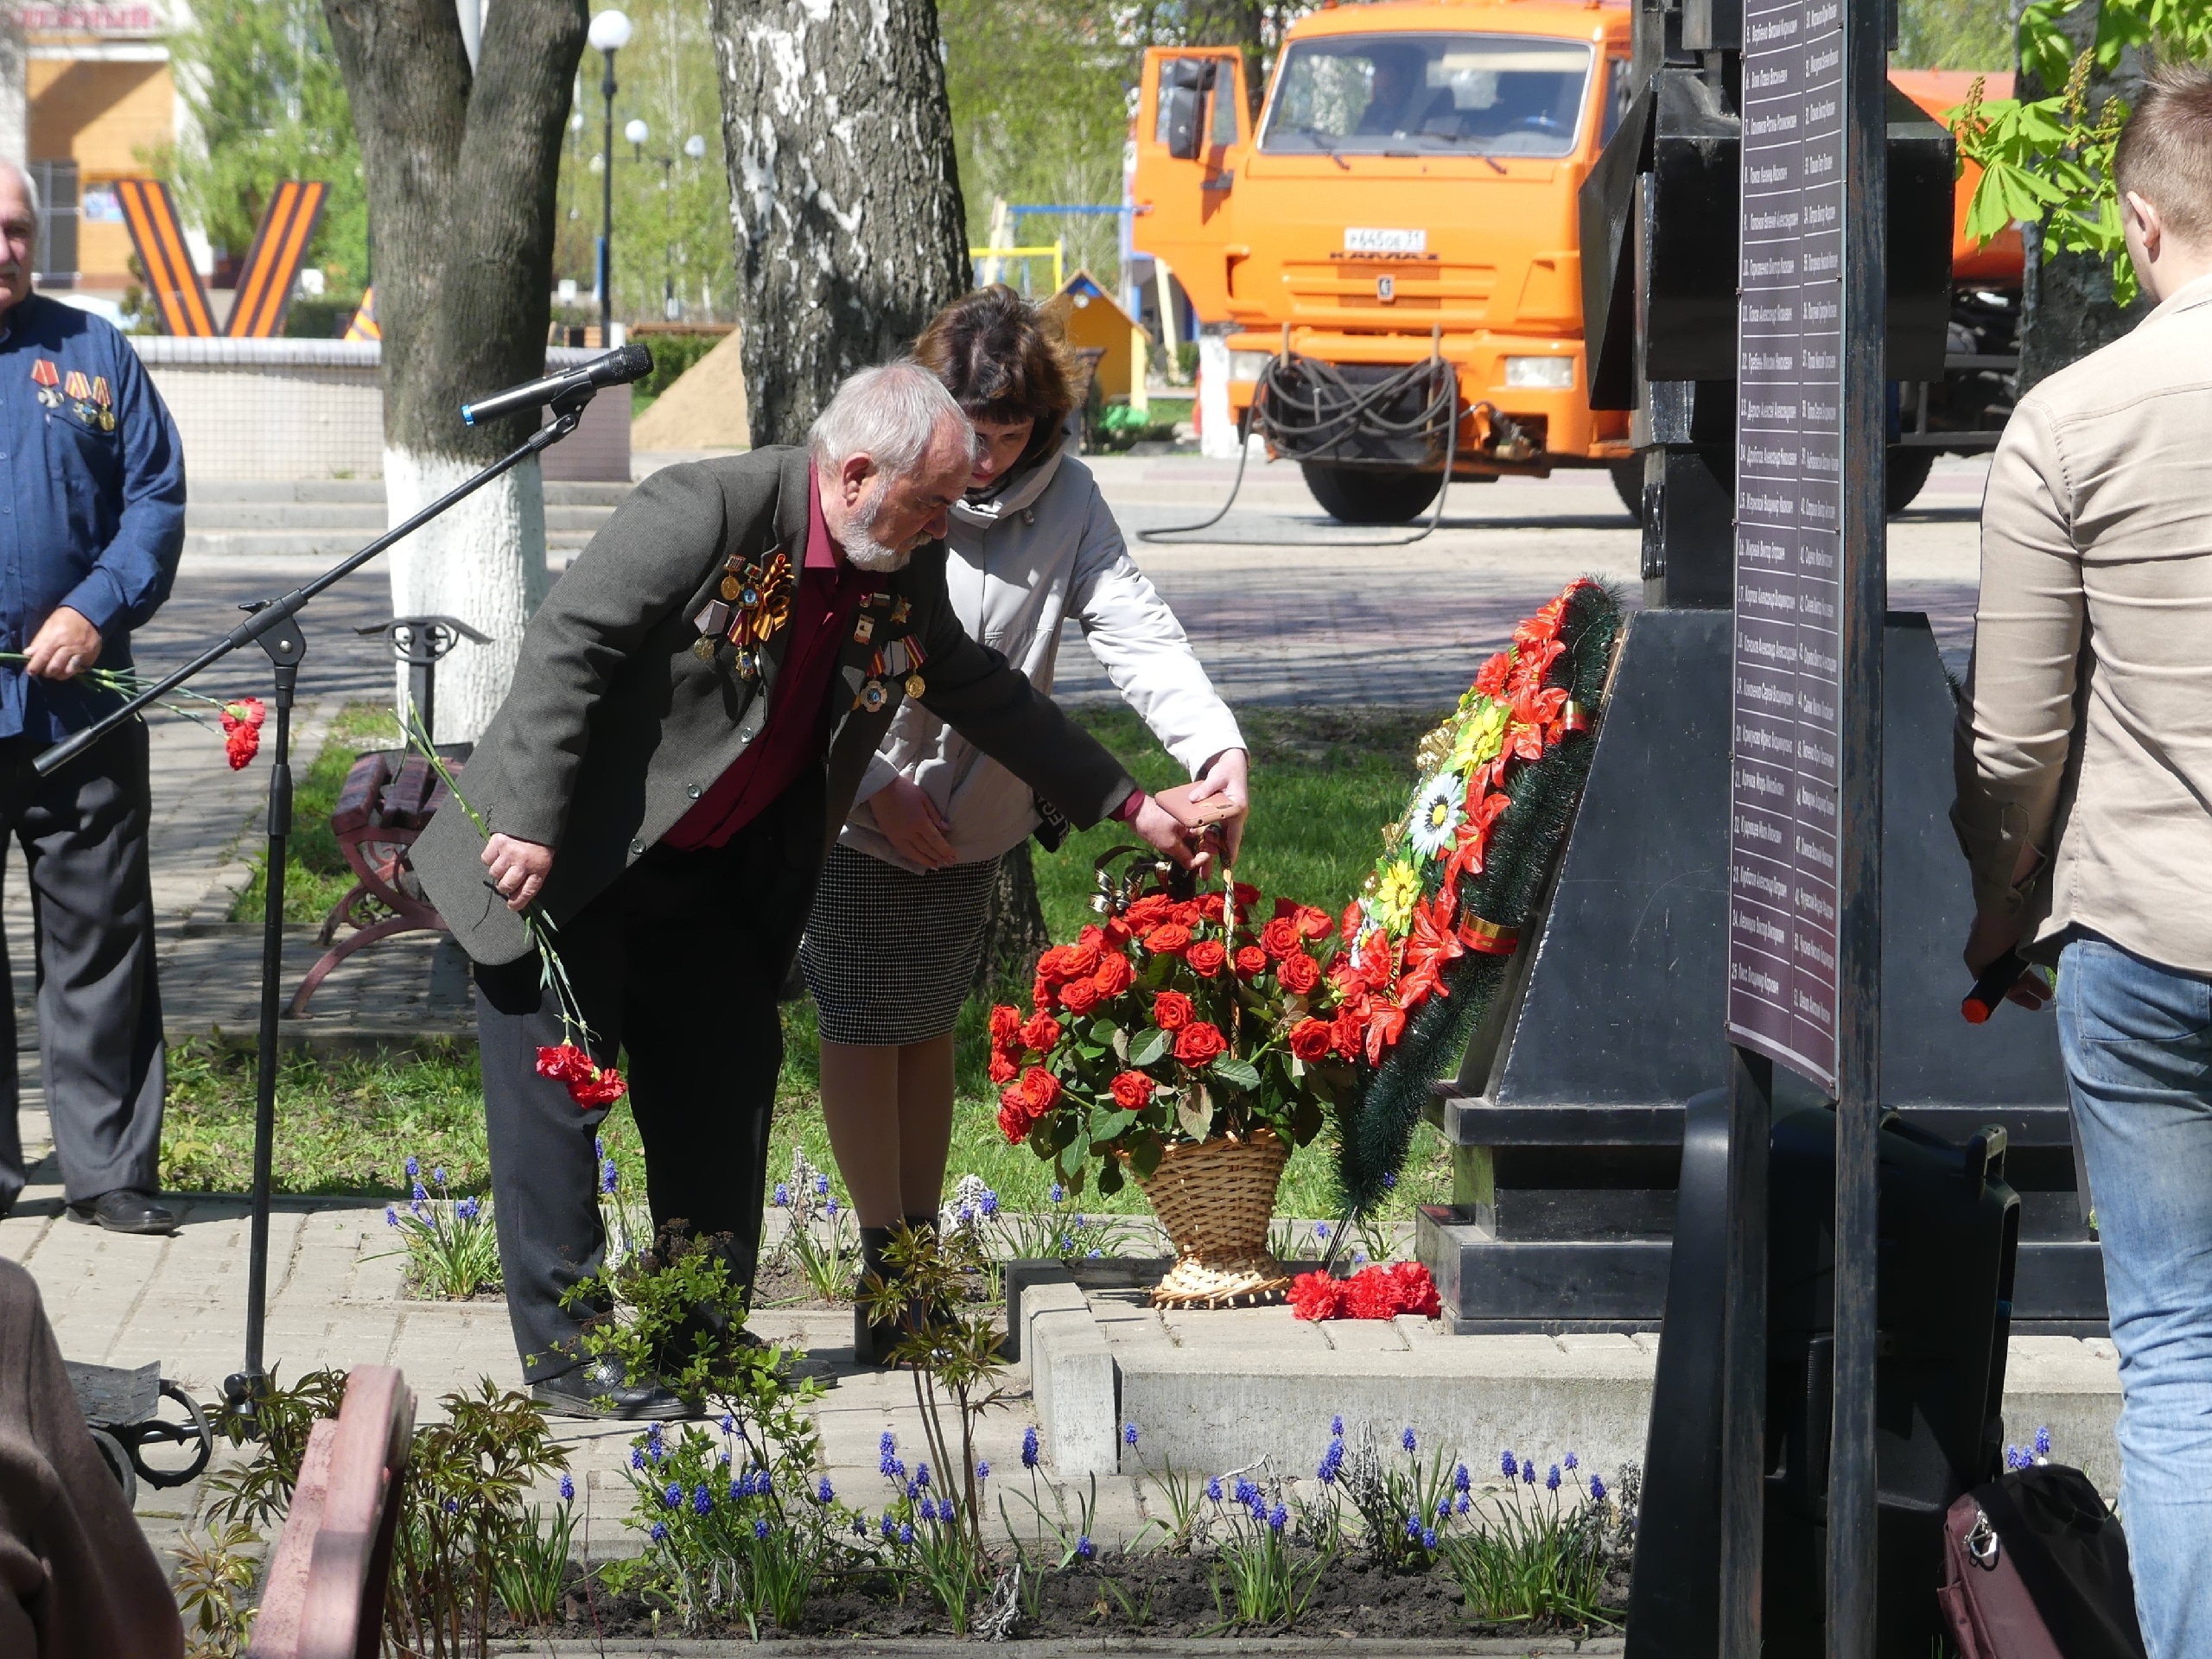 Сегодня, 26 апреля, в России отмечается памятная дата - День участников ликвидации последствий радиационных аварий и катастроф.